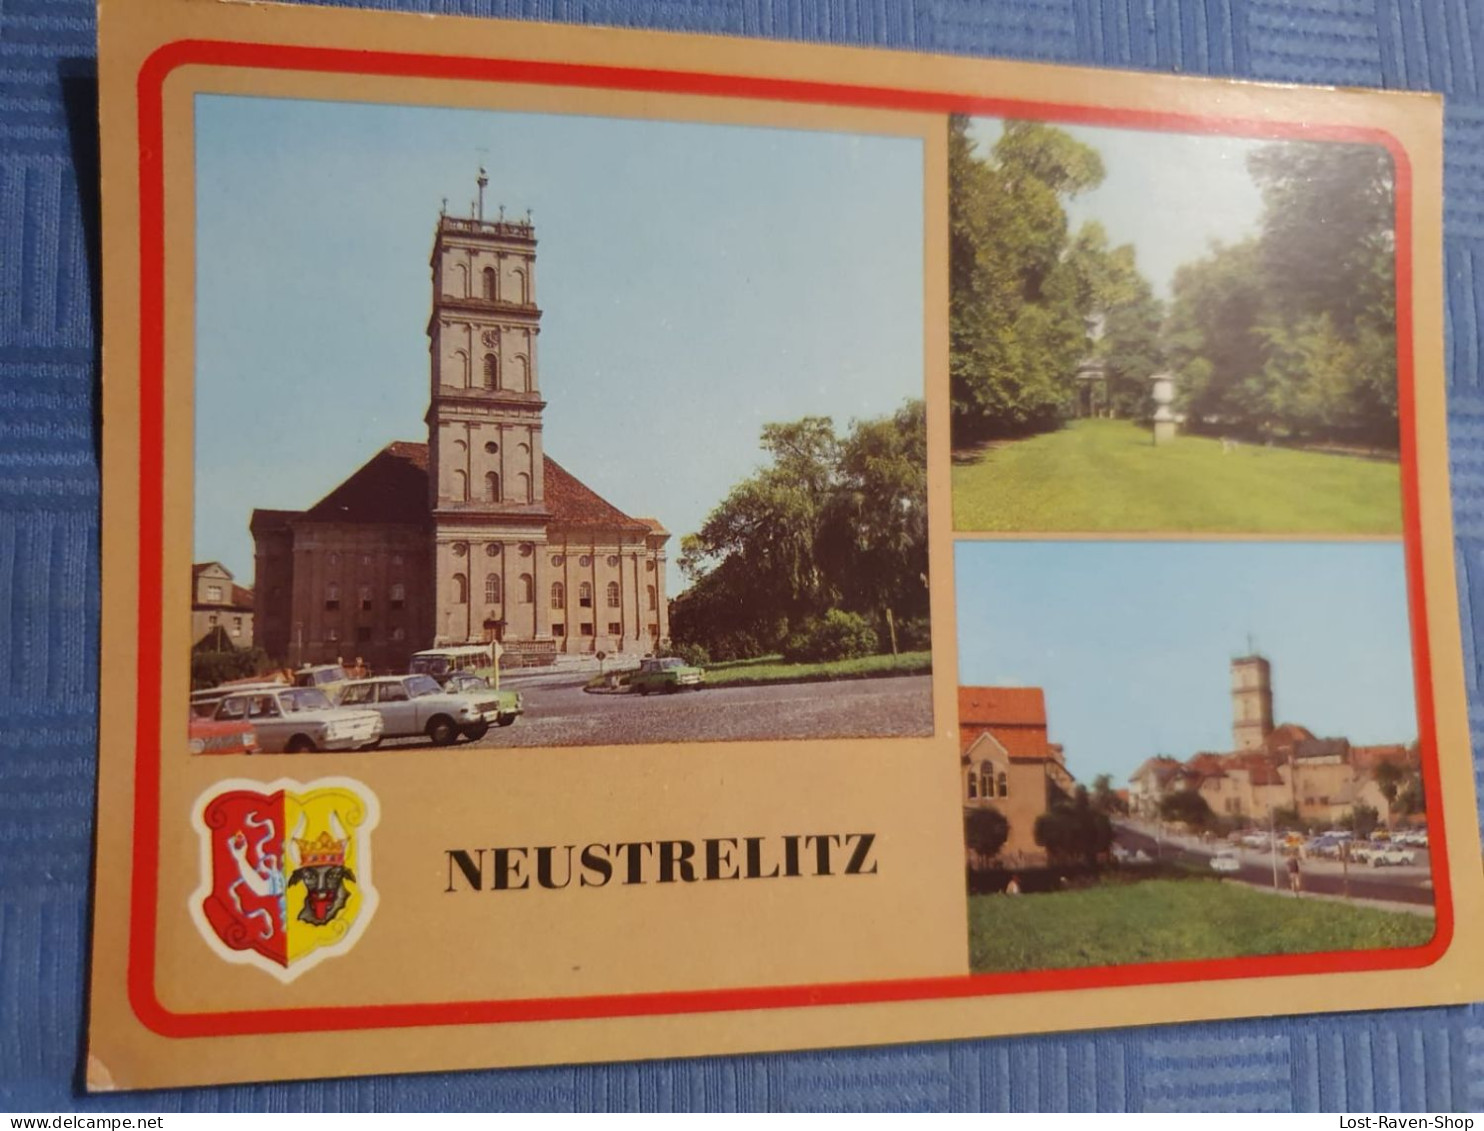 Neustrelitz - Neustrelitz